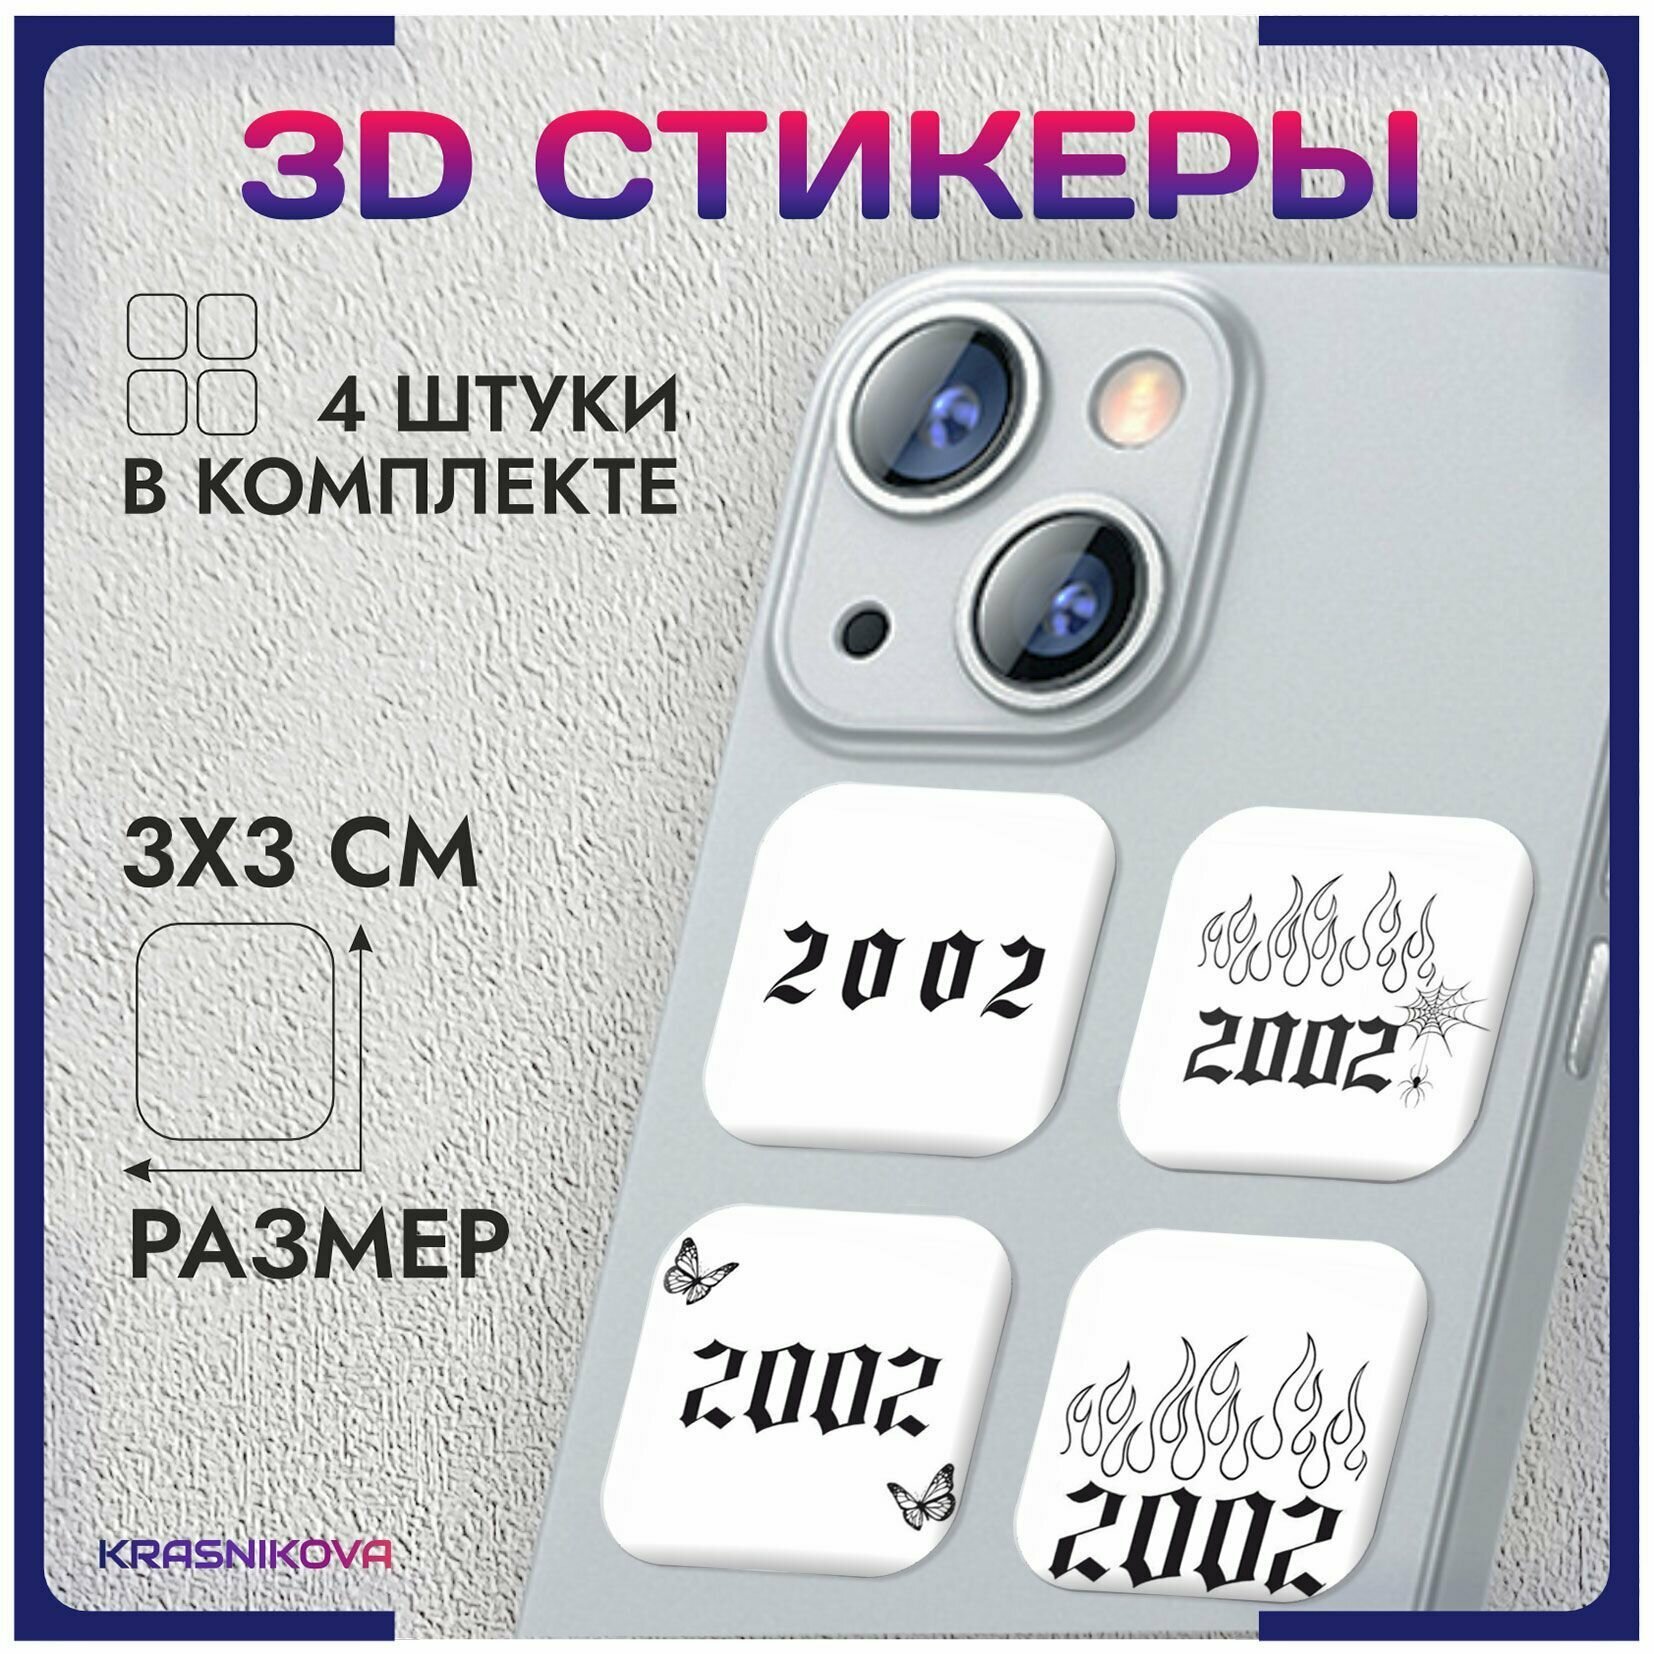 3D стикеры на телефон объемные наклейки 2002 год символика